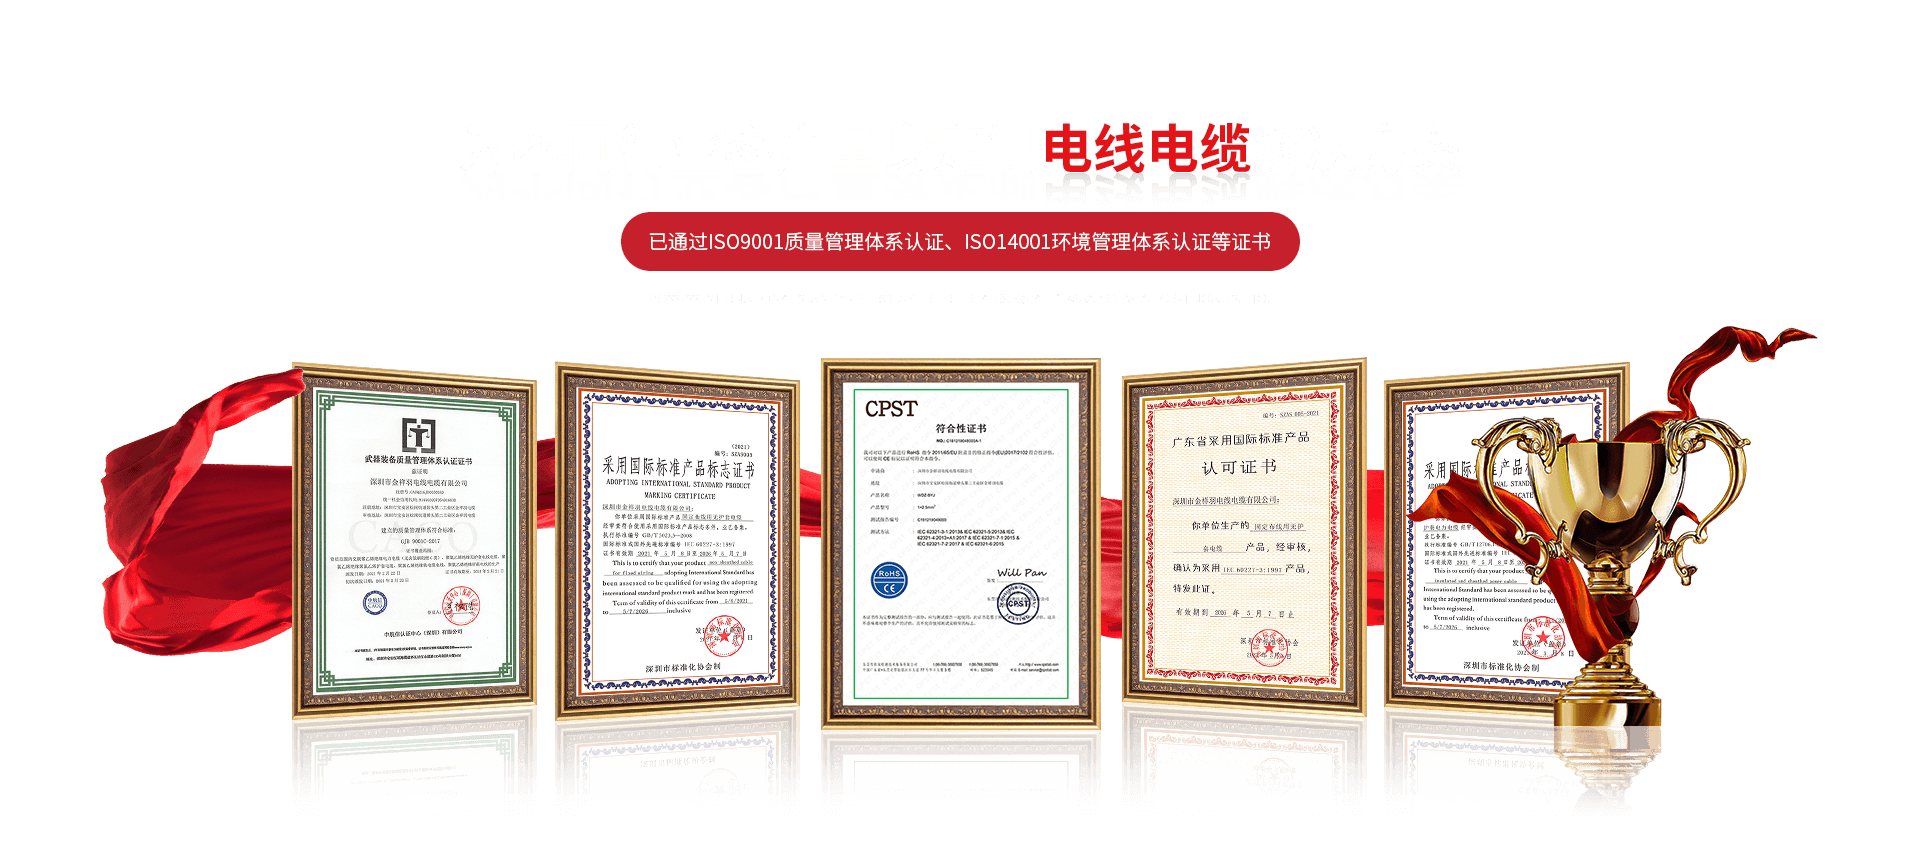 已通过ISO9001质量管理体系认证、ISO14001环境管理体系认证等证书